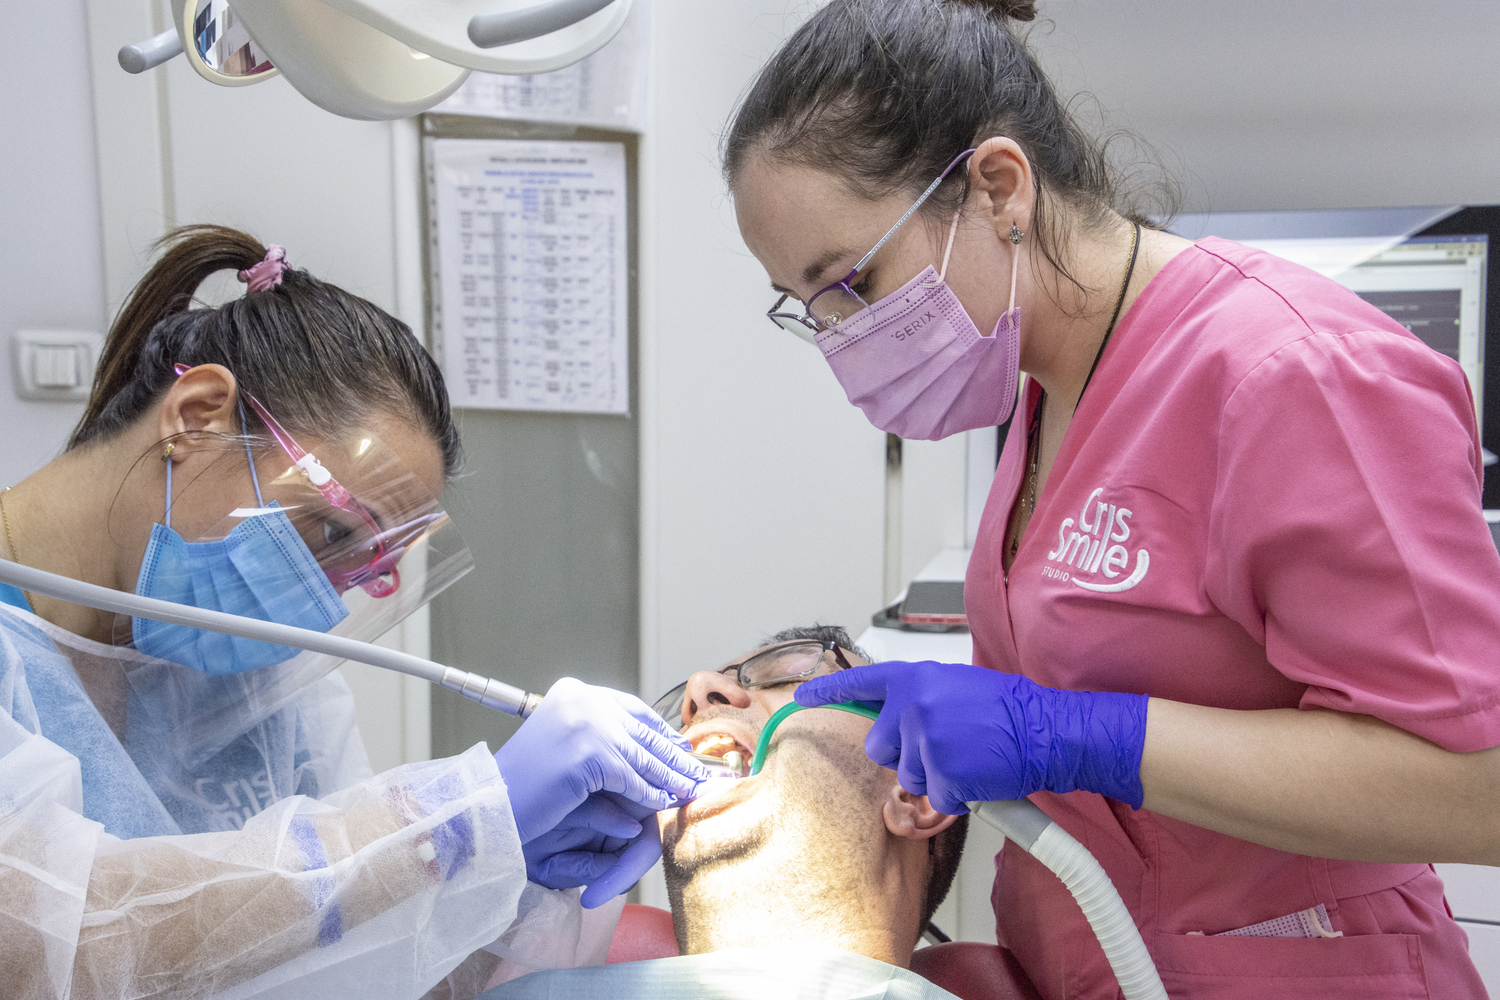   Îngrijire dentară de înaltă calitate în toate sectoarele Bucureștiului, la Cris Smile Studio